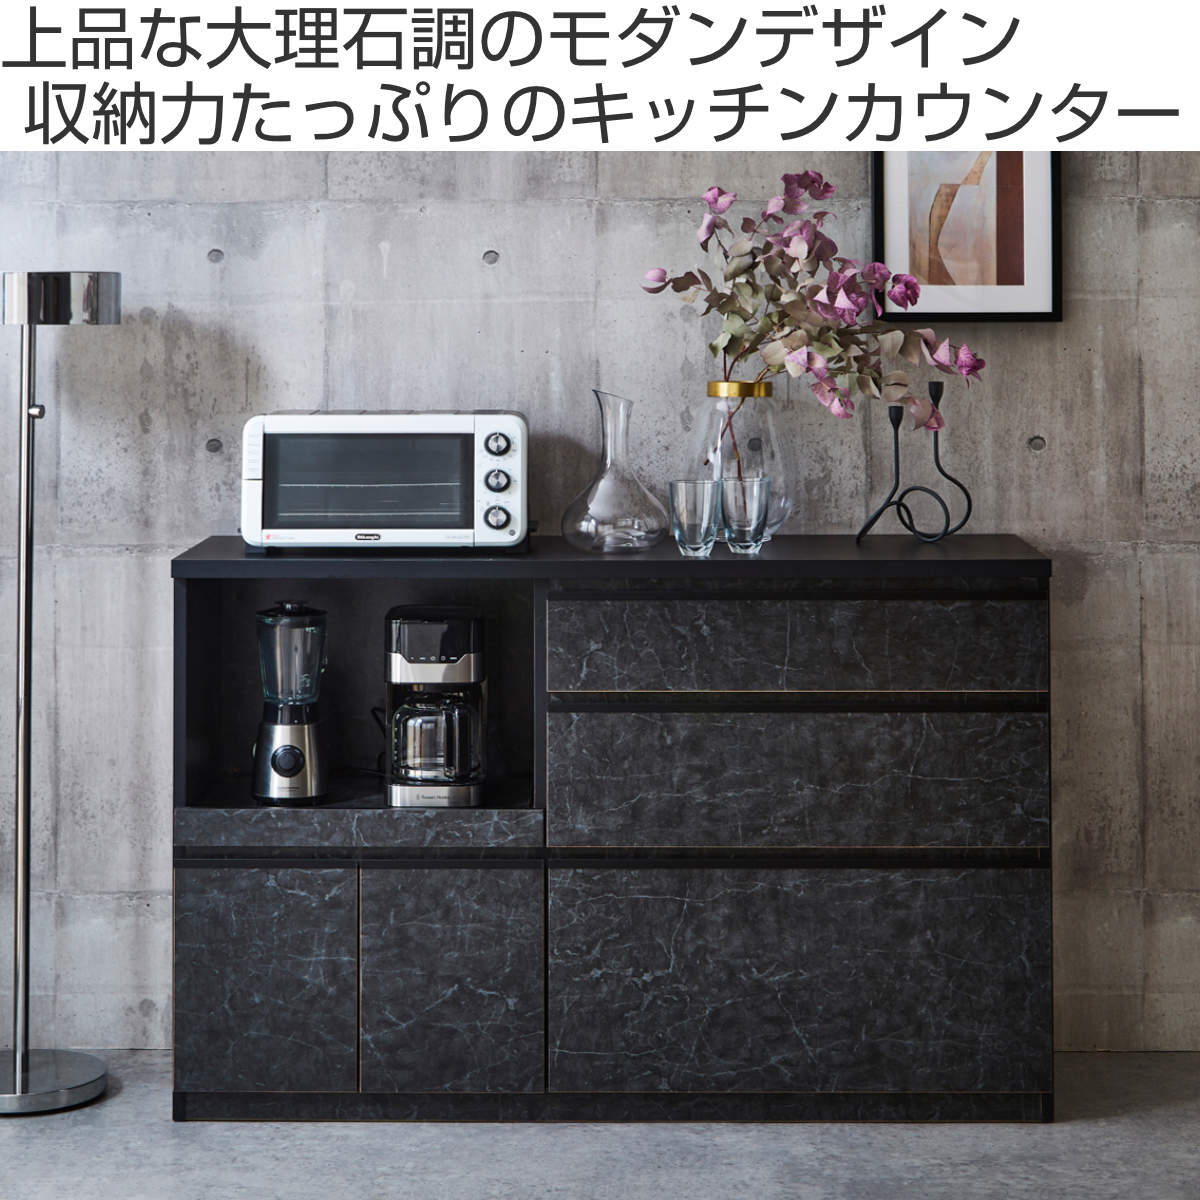 日本製 幅80cm キッチンカウンター 完成品 (ホワイト) - 3